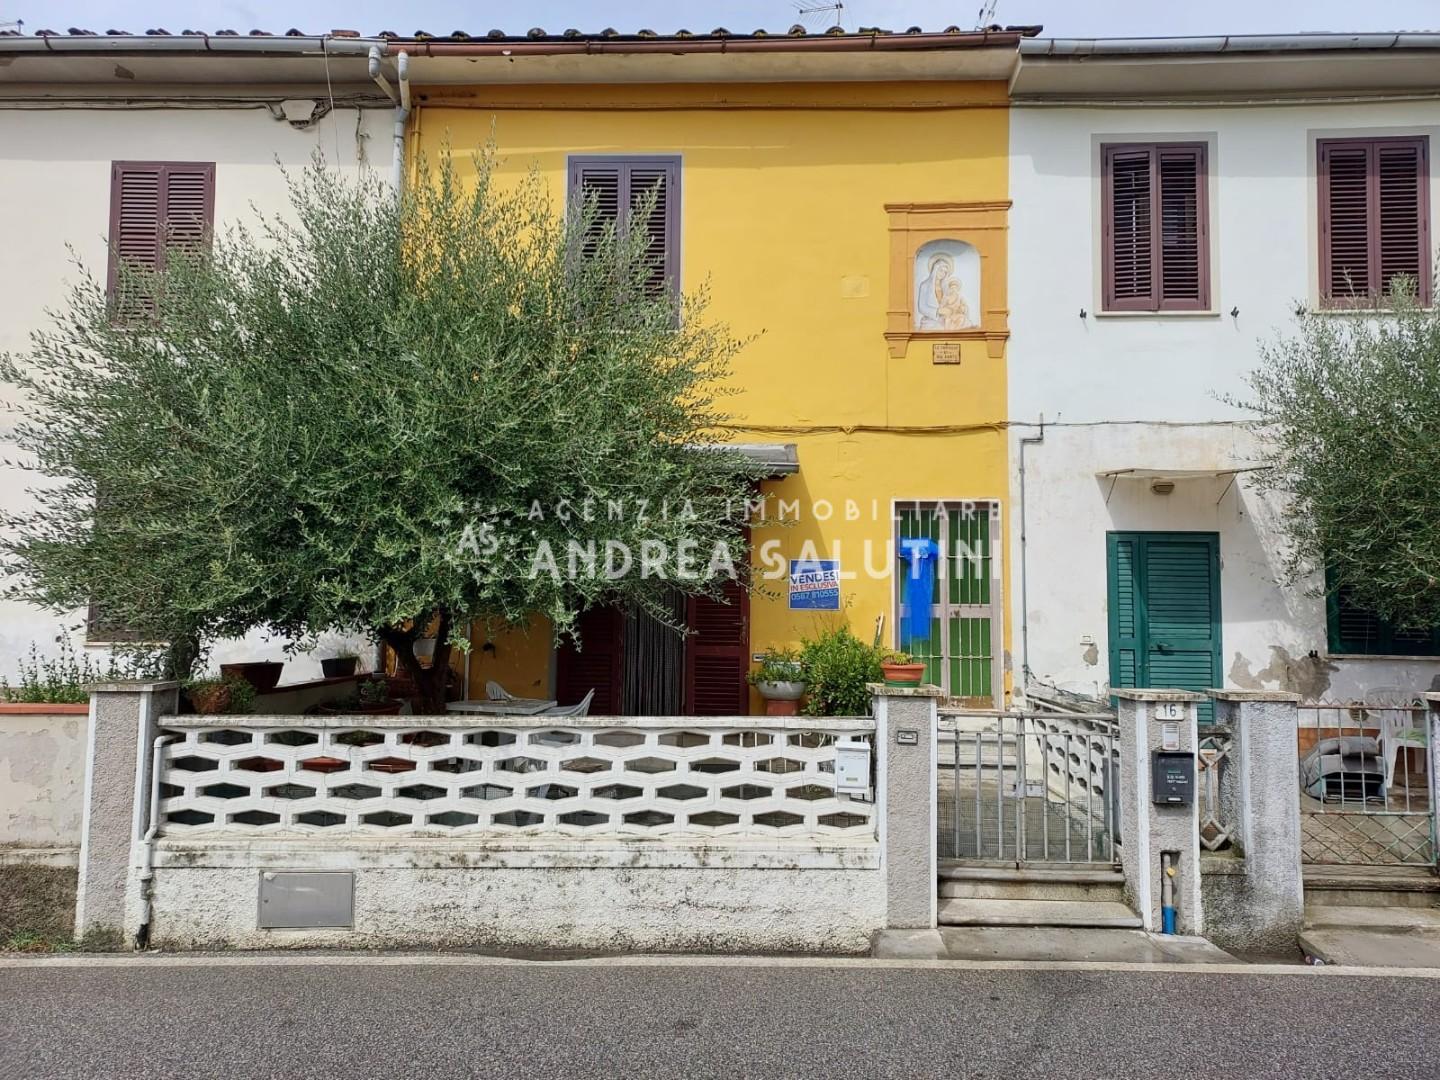 Casa indipendente con giardino, Montopoli in Val d'Arno capanne